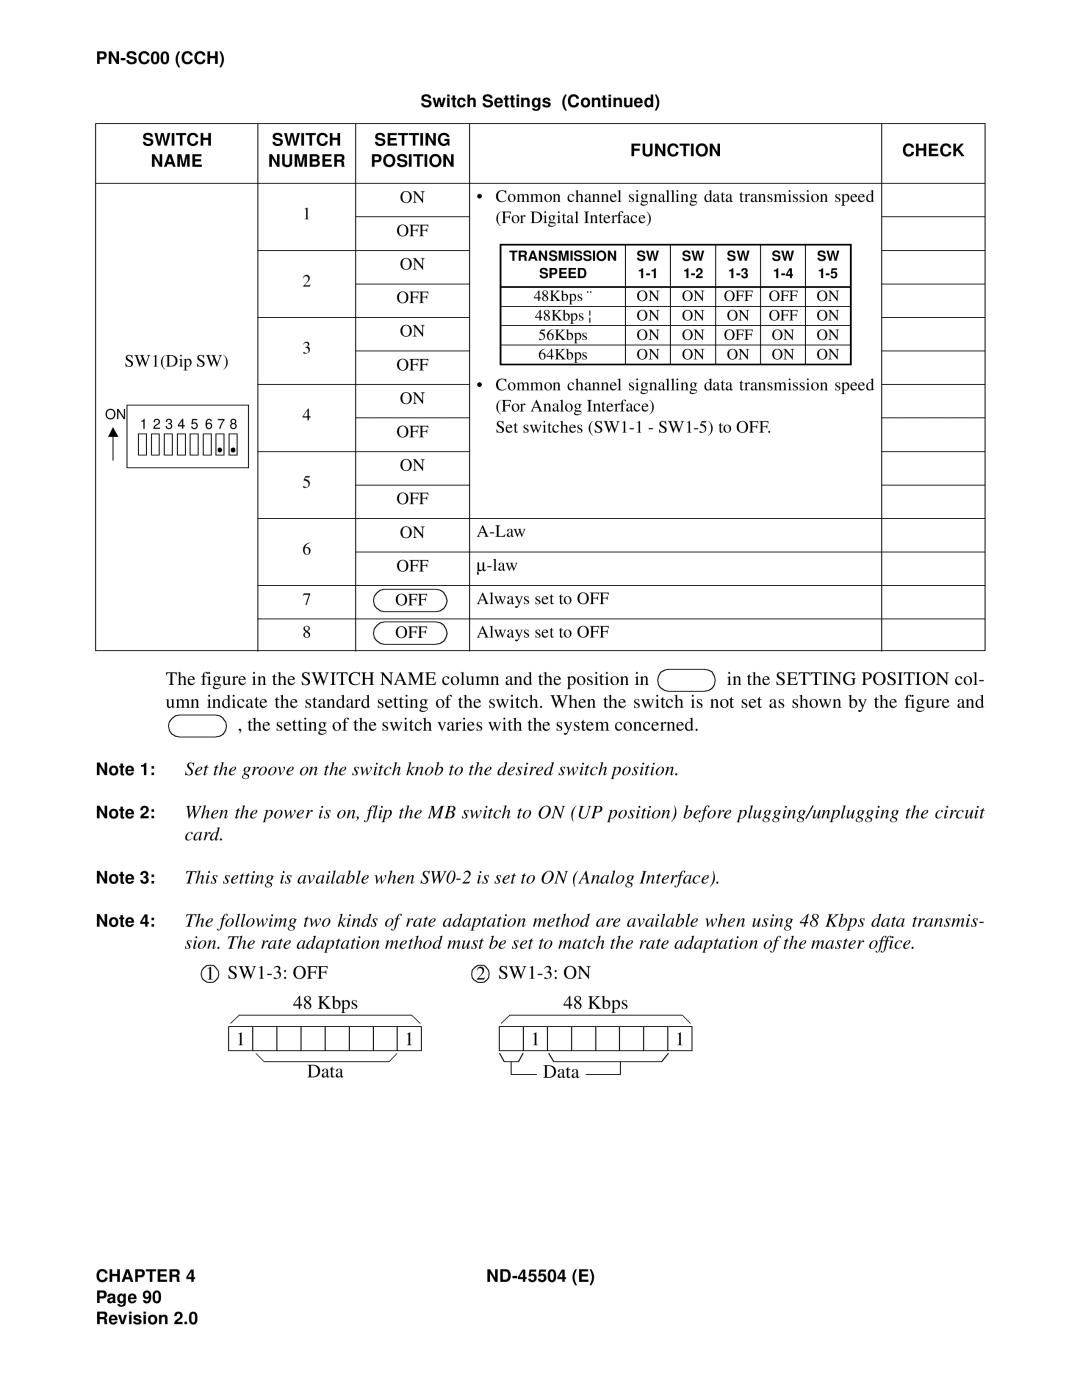 NEC 2000 IVS manual 1 SW1-3:OFF 48 Kbps 1 Data, 2 SW1-3:ON 48 Kbps 1 Data 